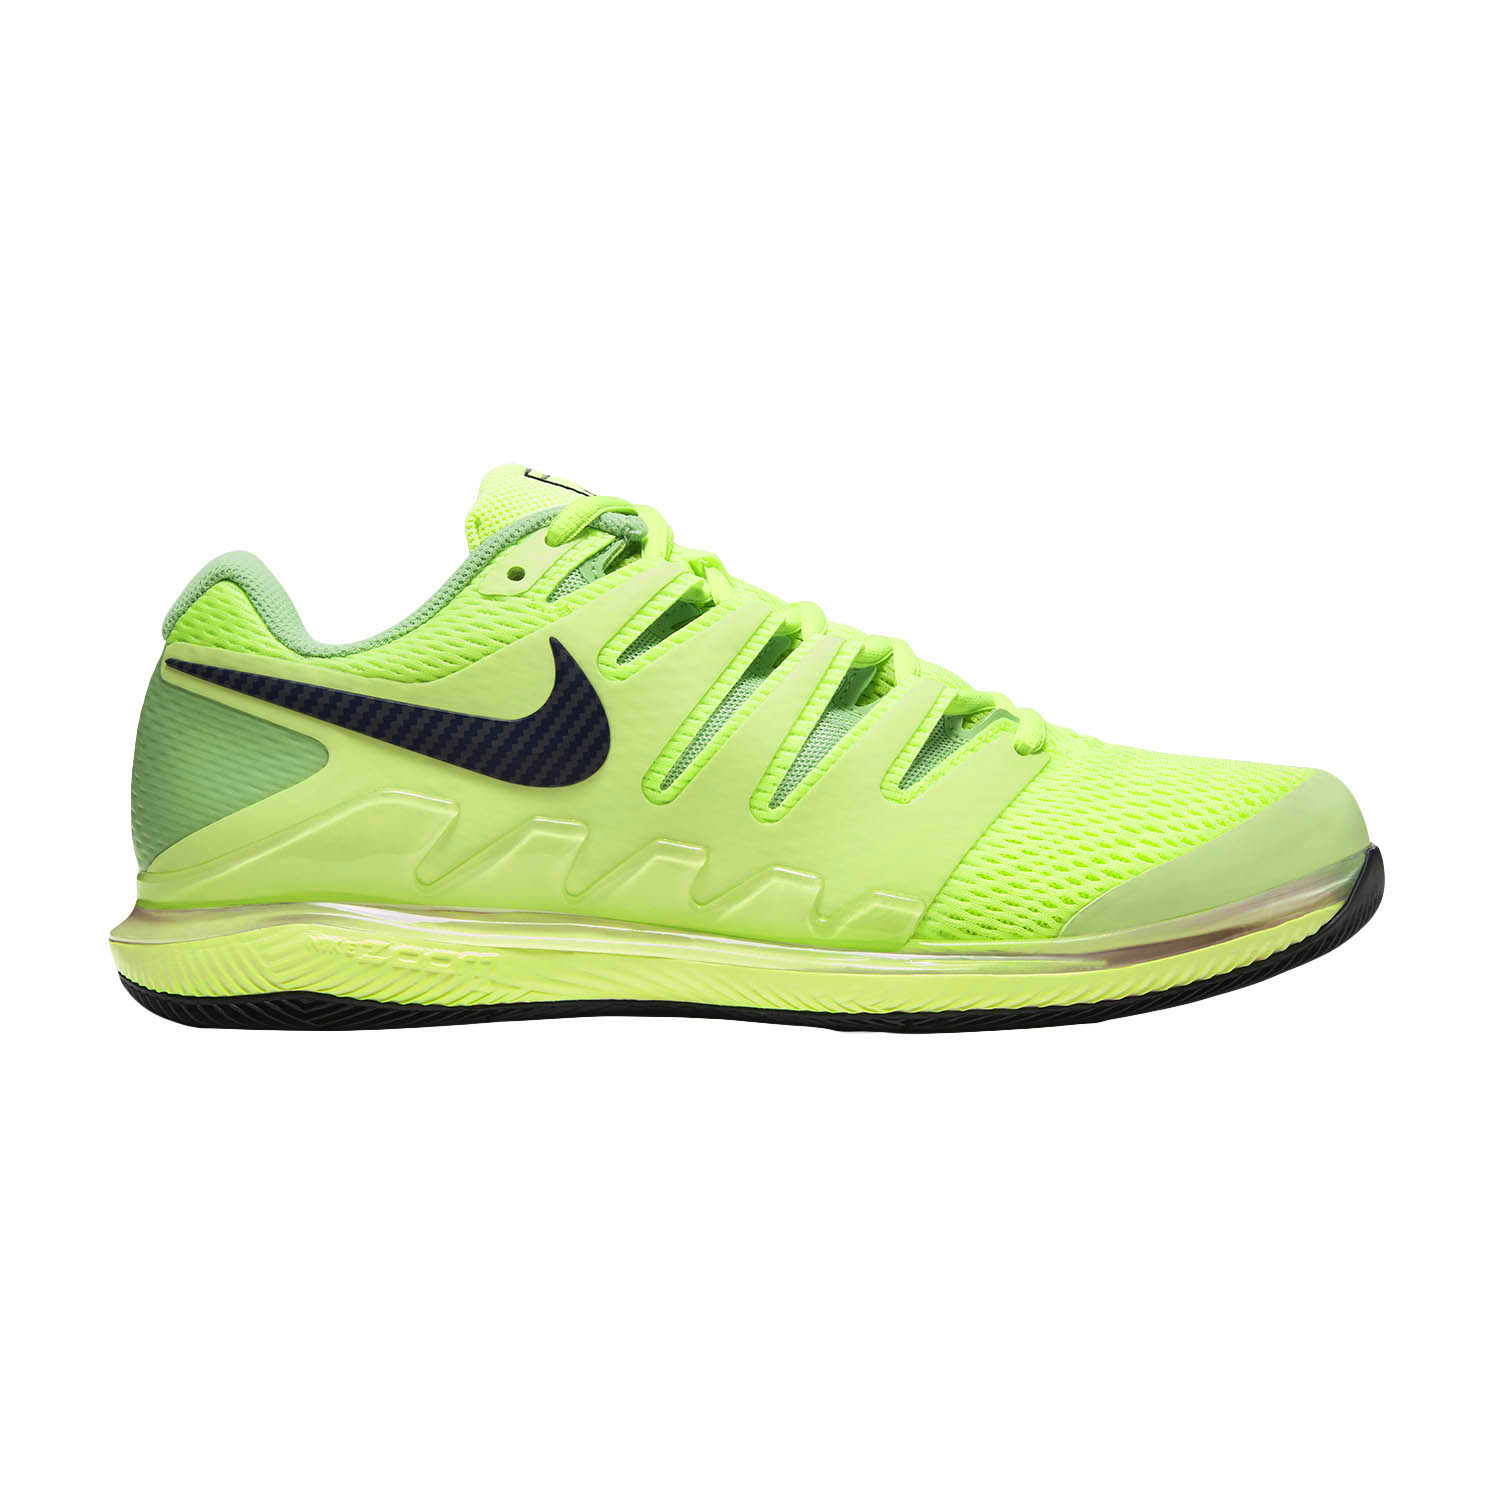 nike green tennis shoes